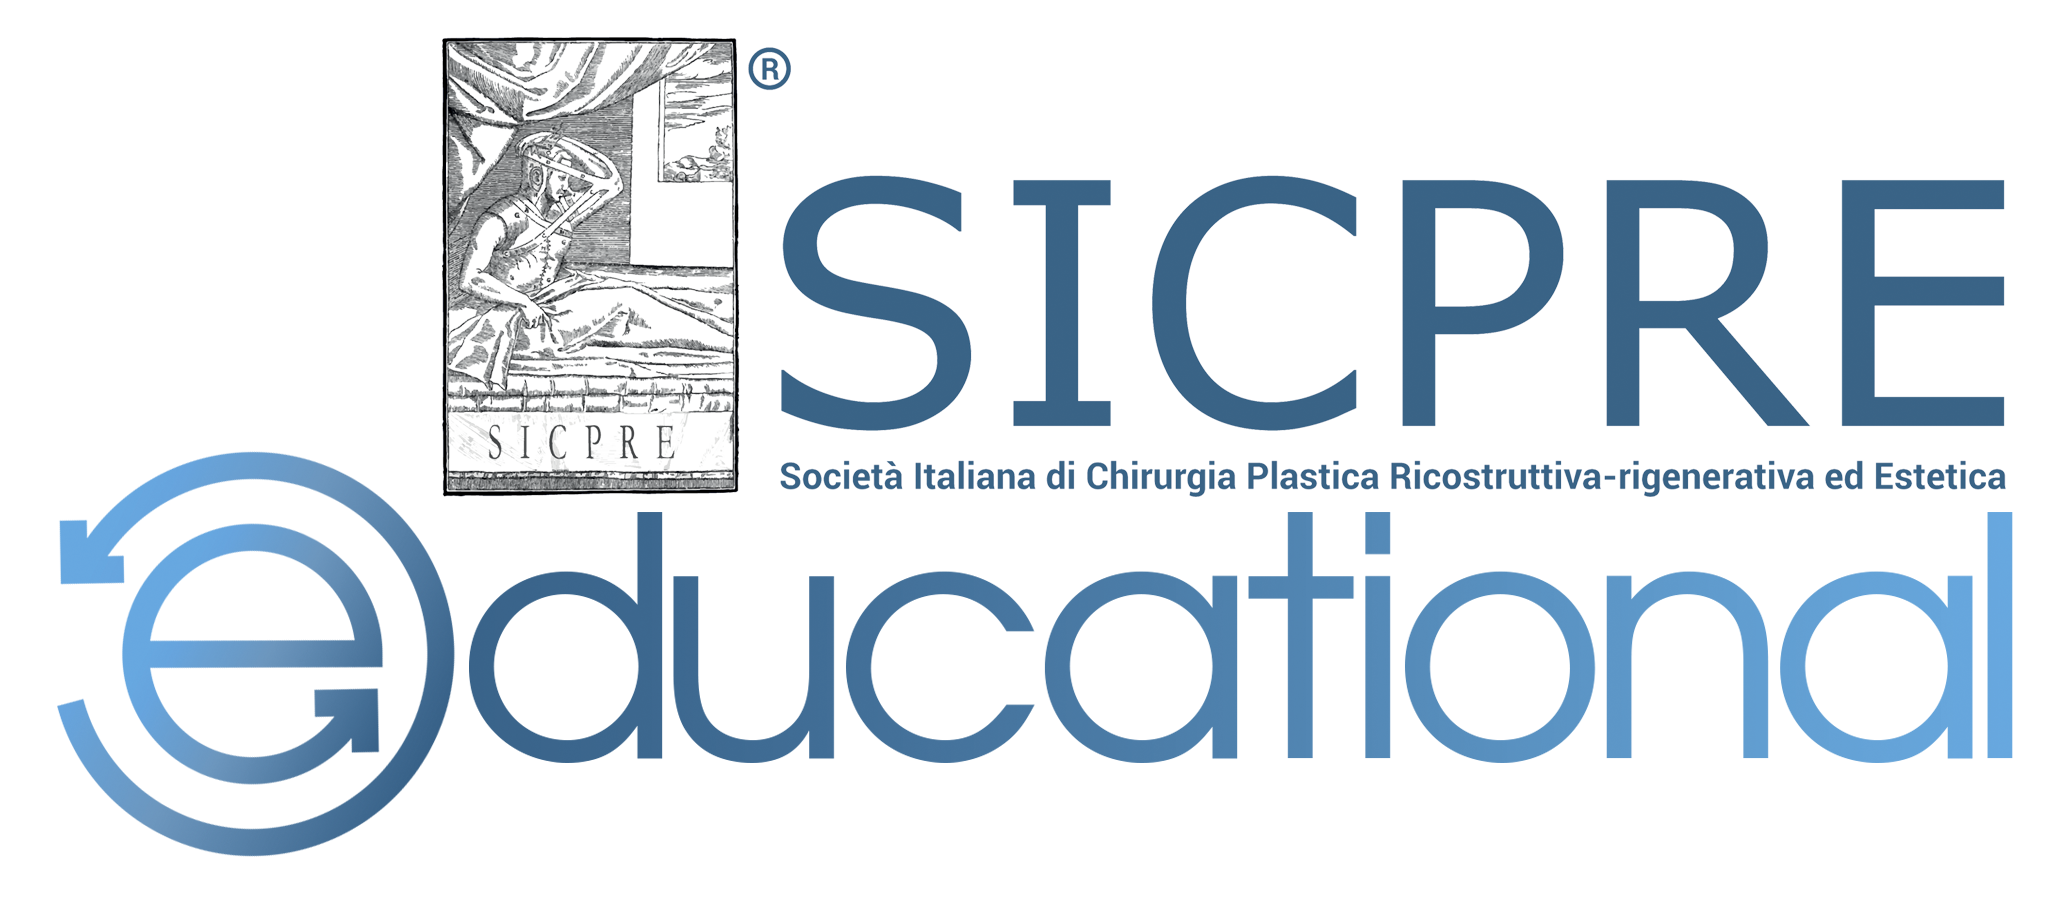 Logo_SICPRE_Educational_trasparente_per_web_e_mailing